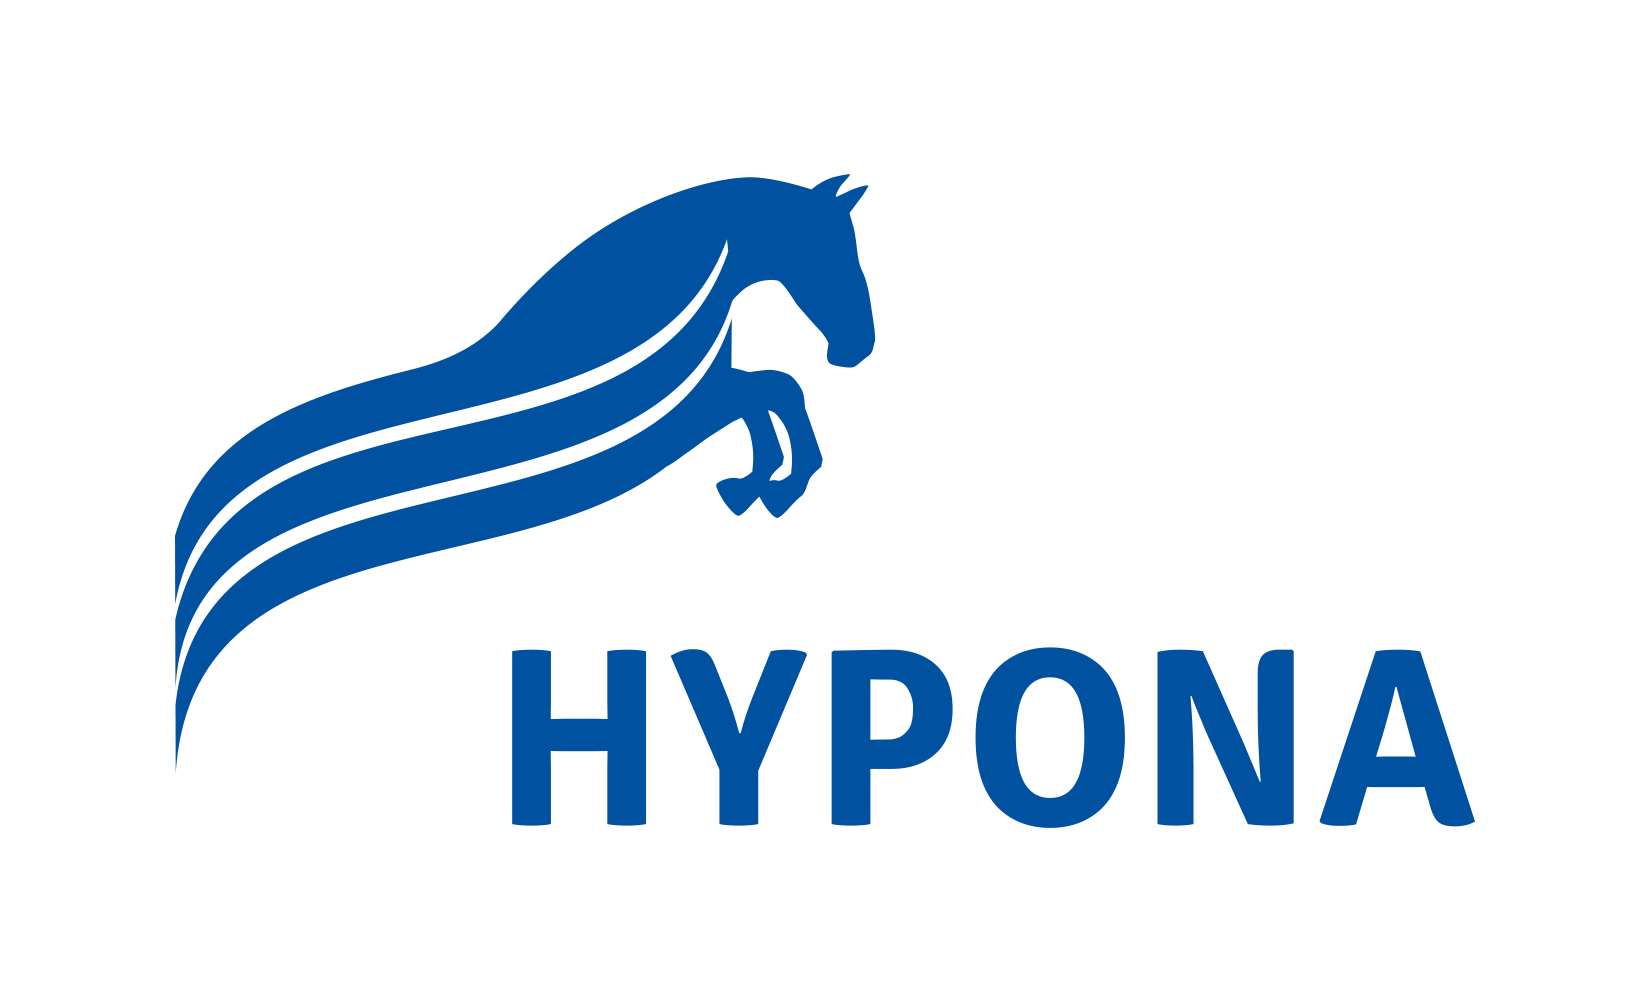 Hypona Pferdefutter / Ufa AG